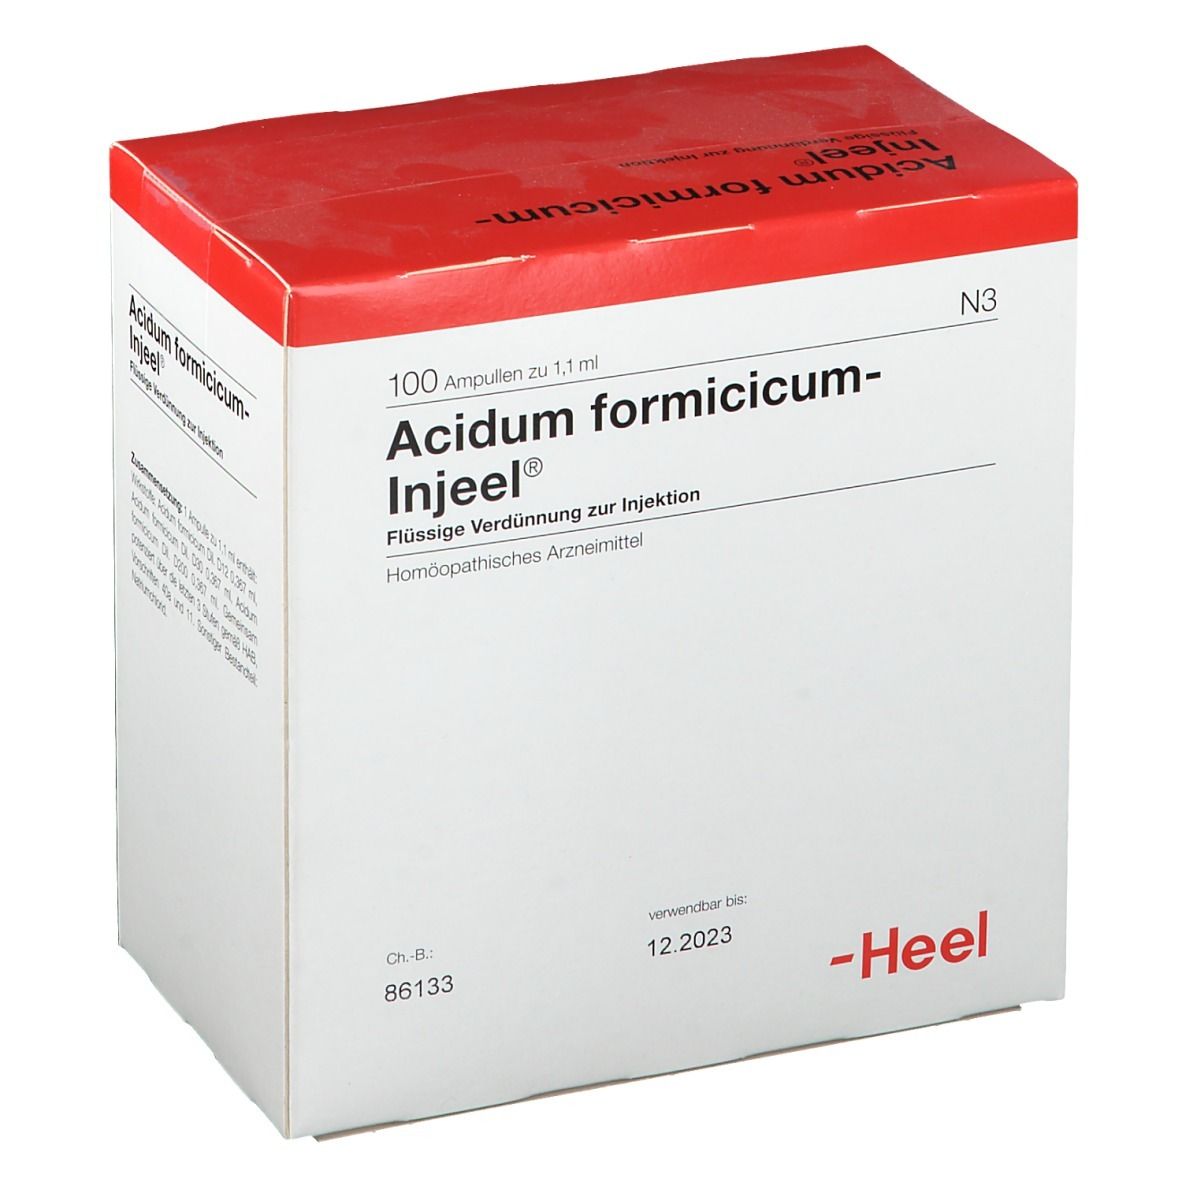 Acidum formicicum-Injeel® Ampullen